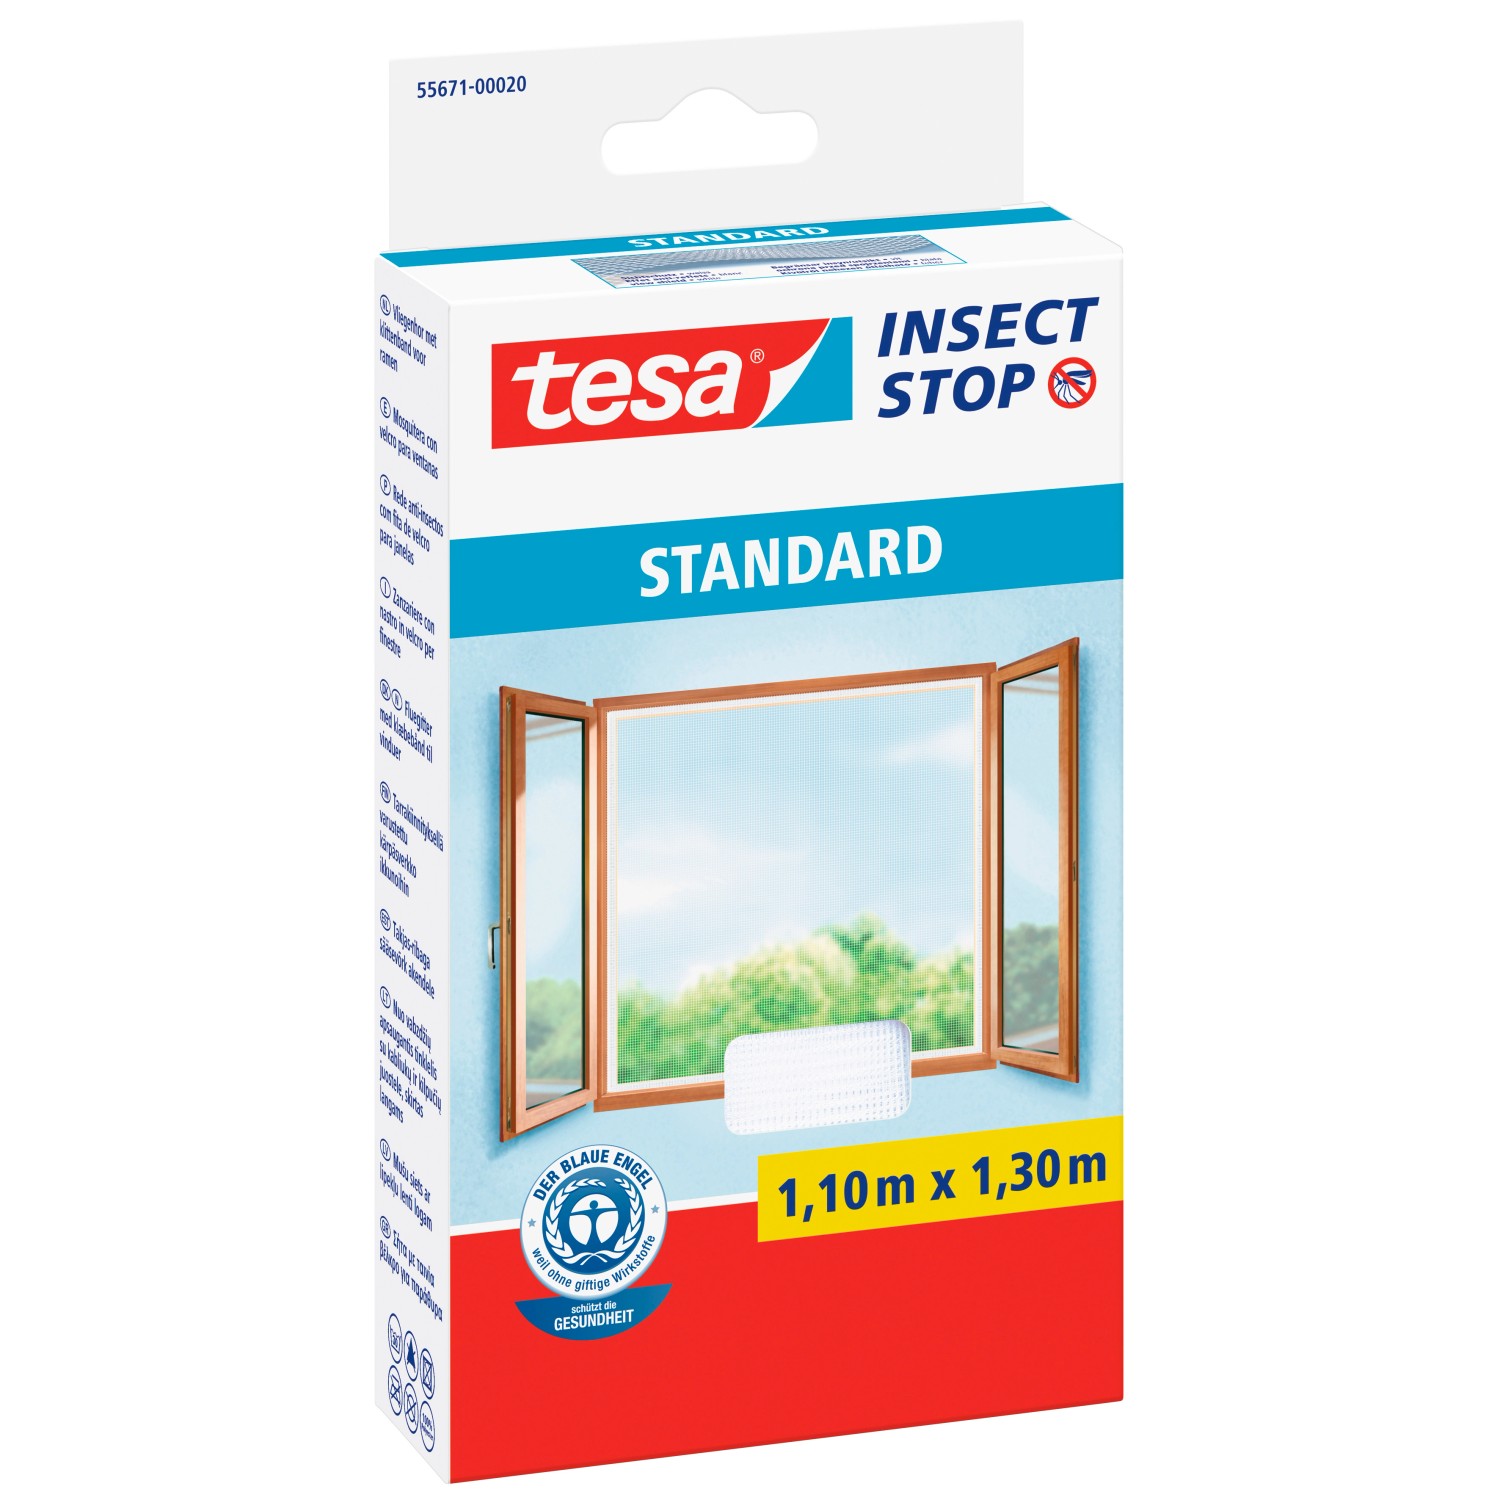 Tesa Insect Stop Fliegengitter Standard mit Klettband 130 cm x 110 cm Weiß von Tesa